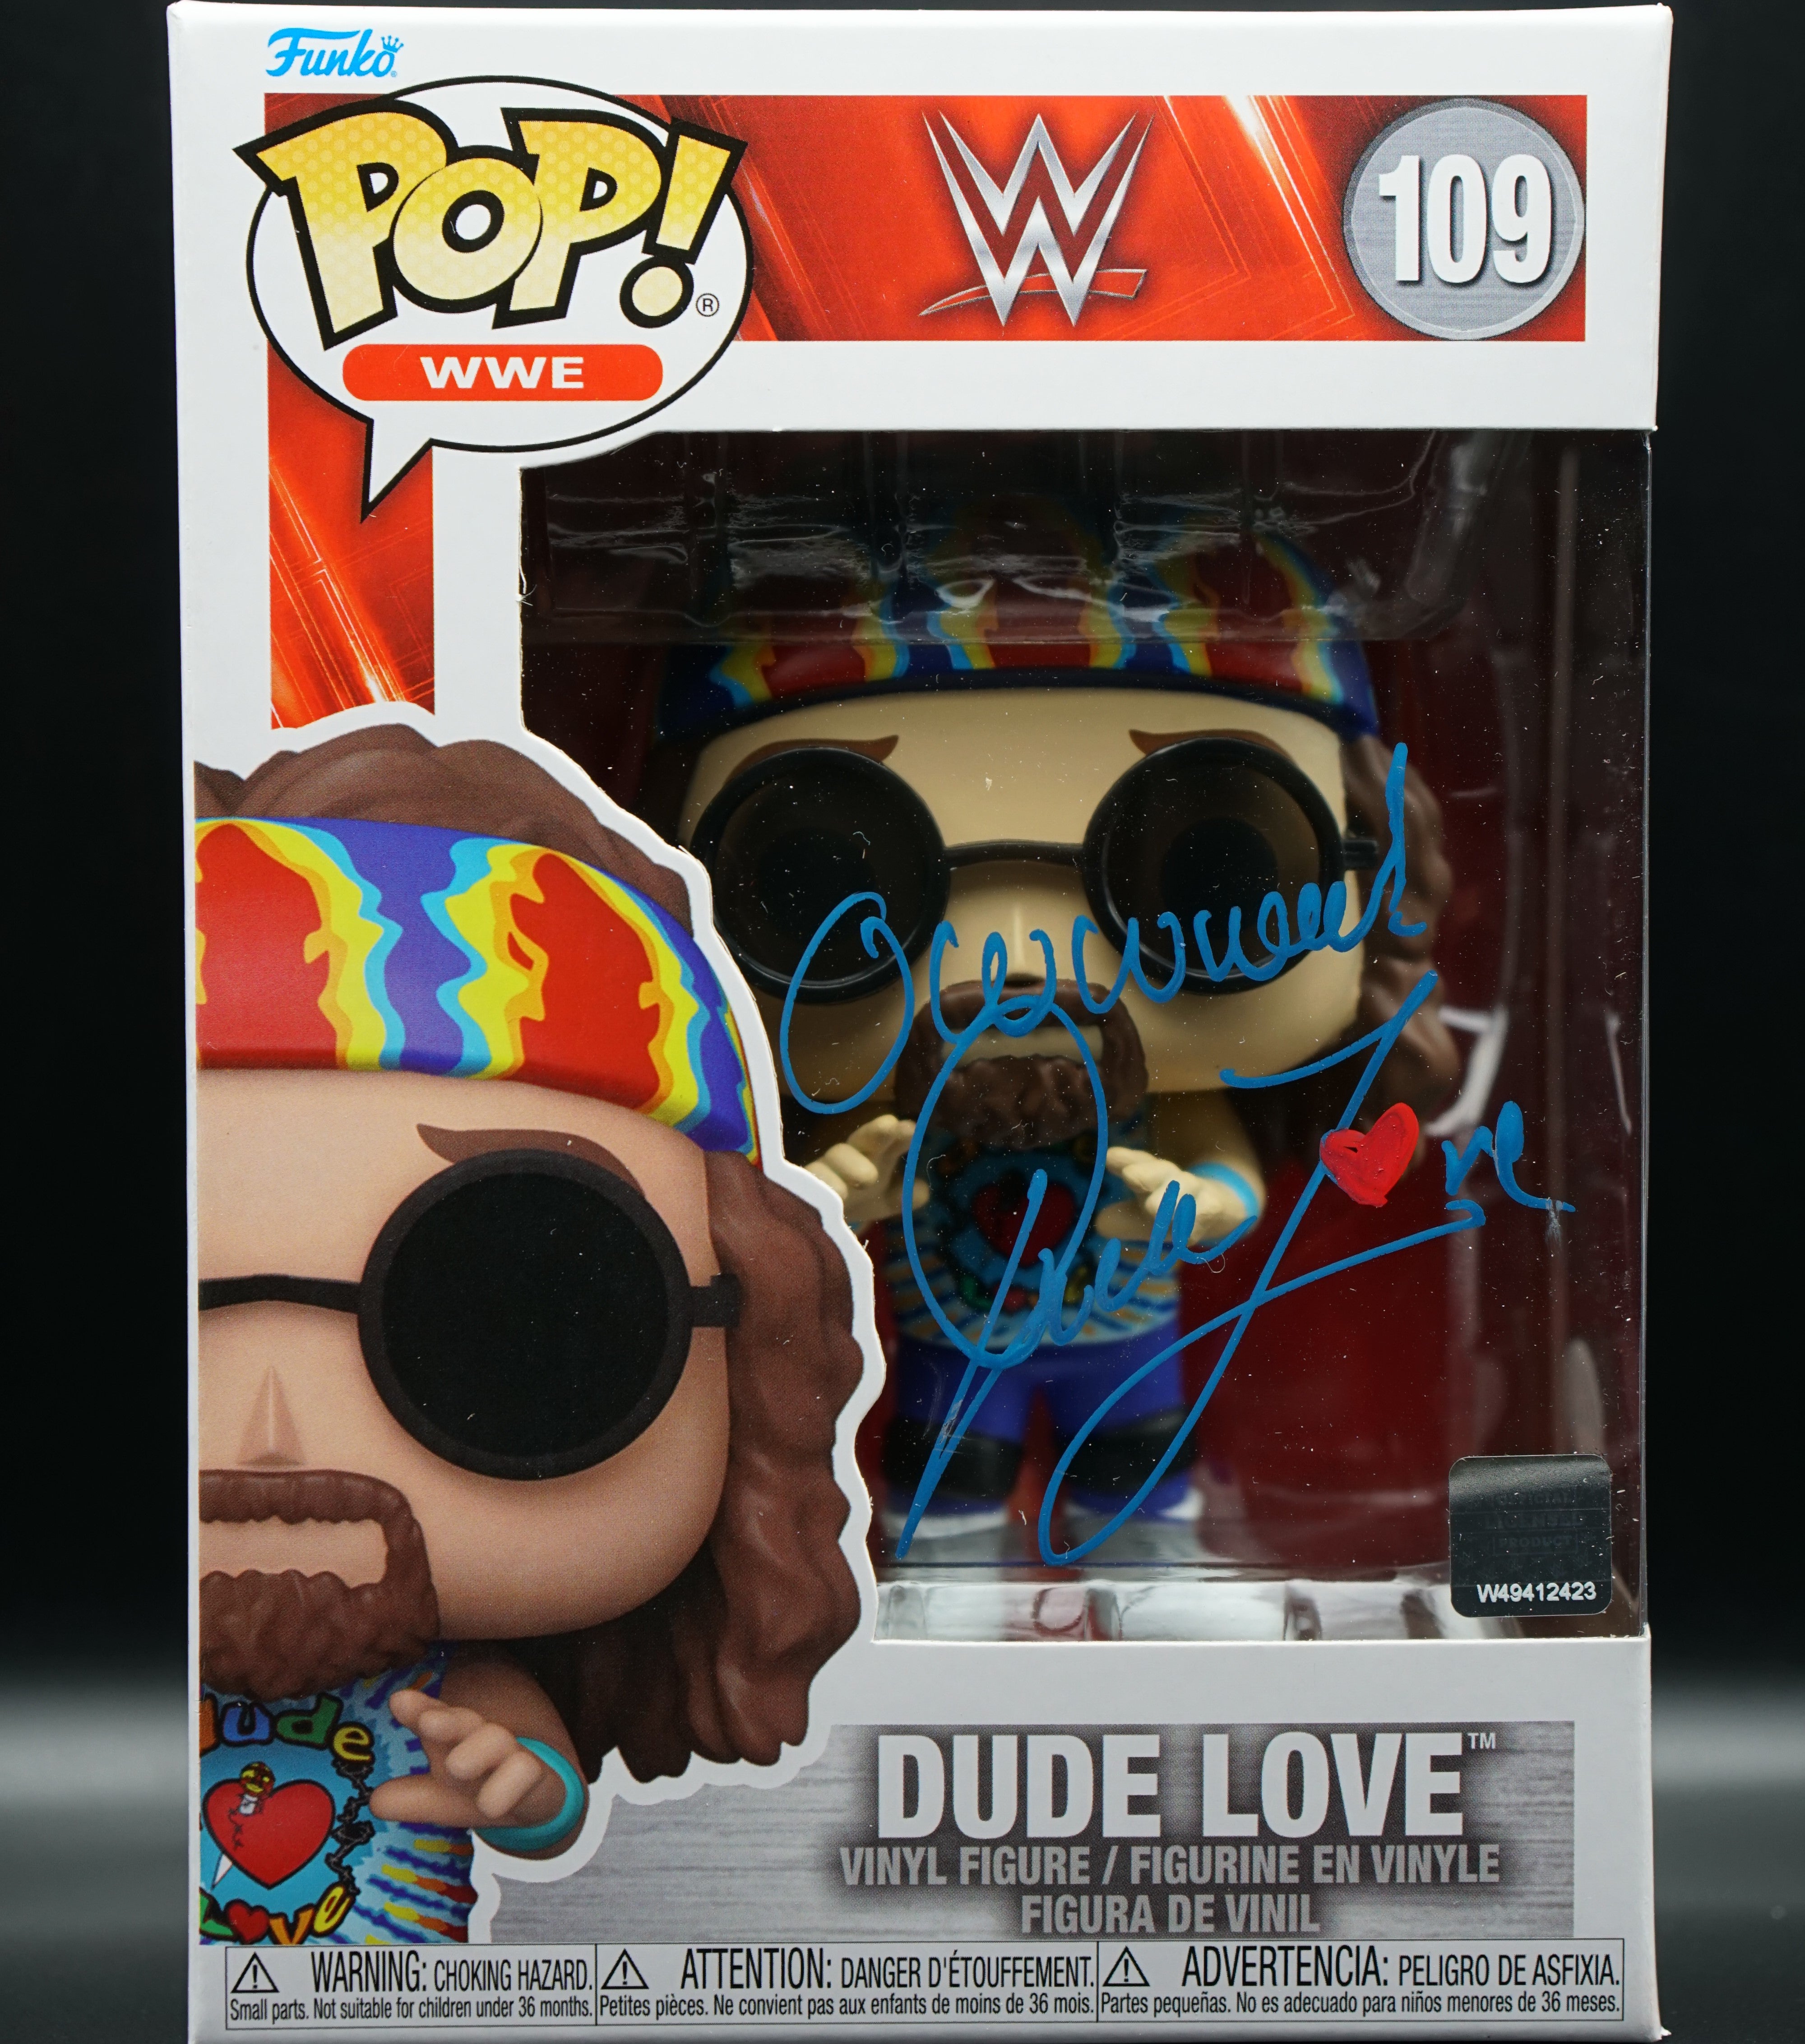 WWE Dude Love Funko Pop # PSA COA inscription "owwwe!" - Signed by Mick Foley as Dude Love